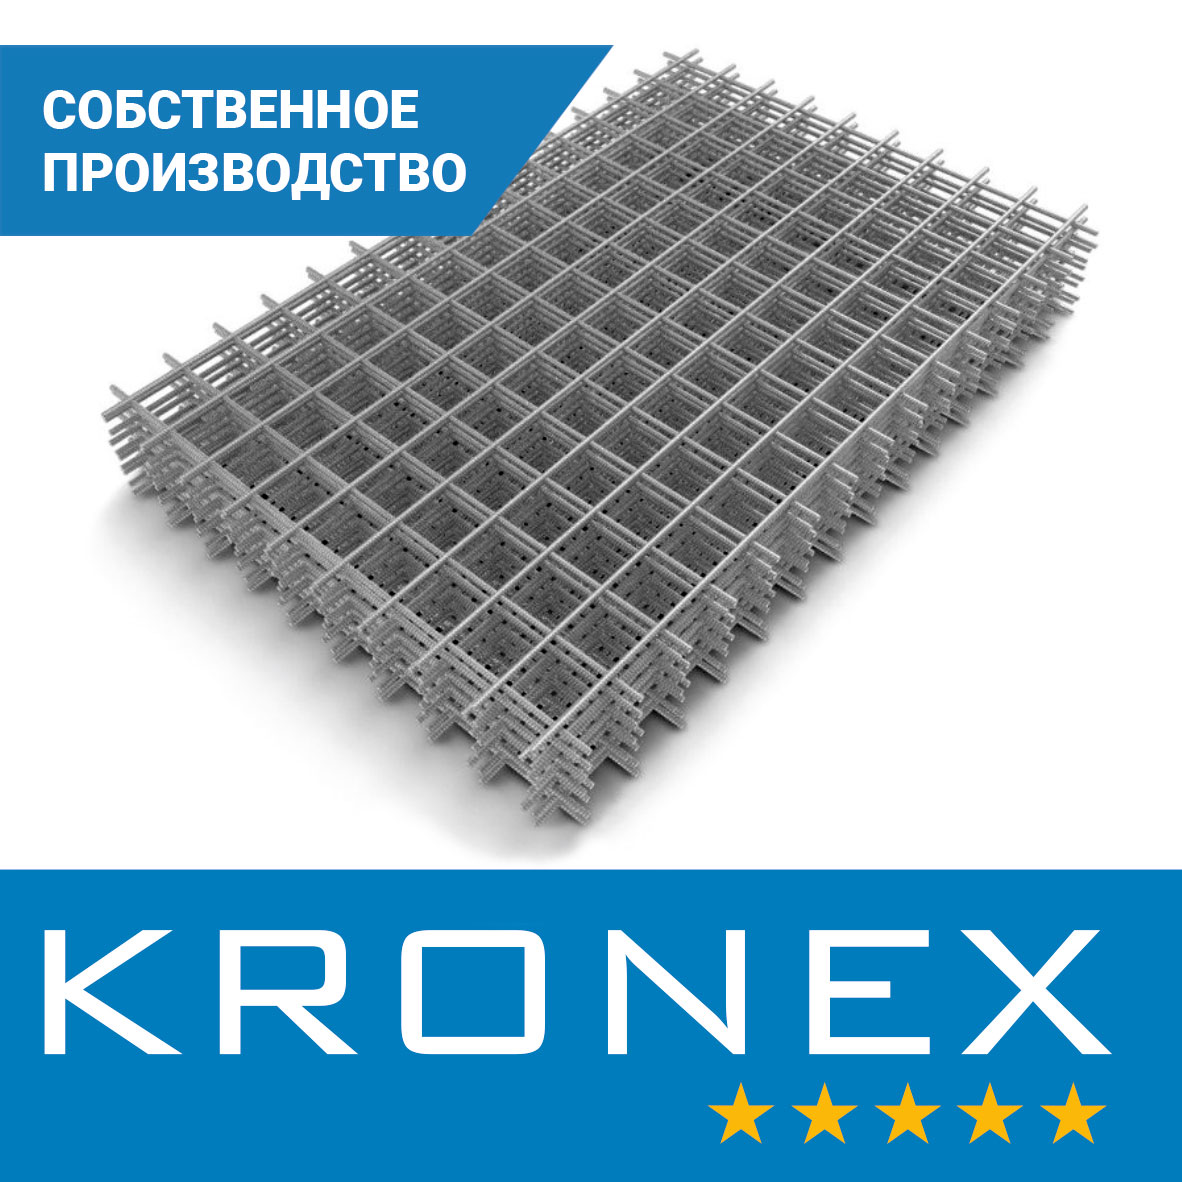 Сетка сварная KRONEX 200/200/4 (карта 1,5×2 м), исп. по ГОСТ 23279-2012, S500